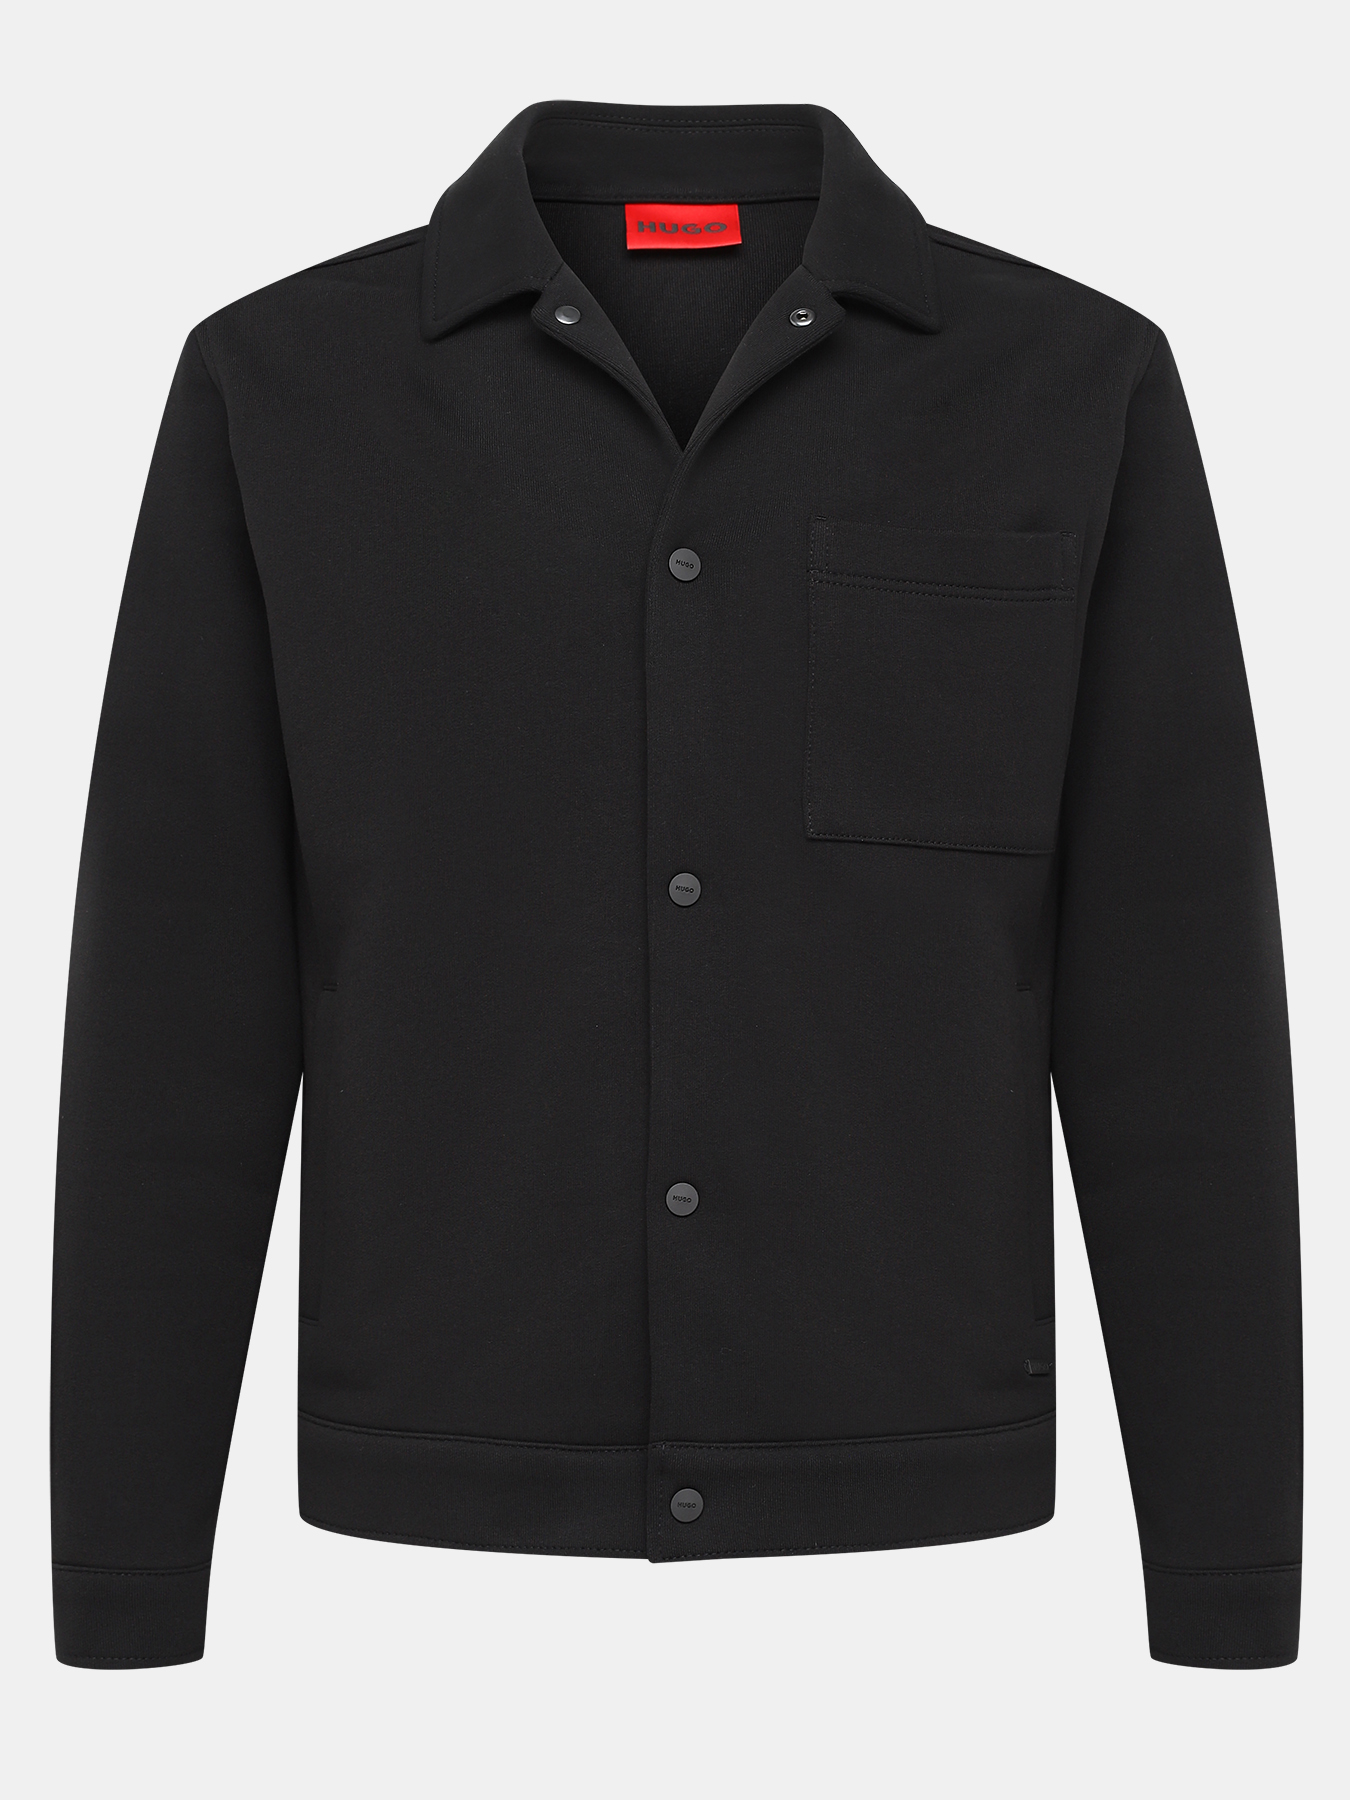 Пиджак Hejrik HUGO 420478-045, цвет черный, размер 52-54